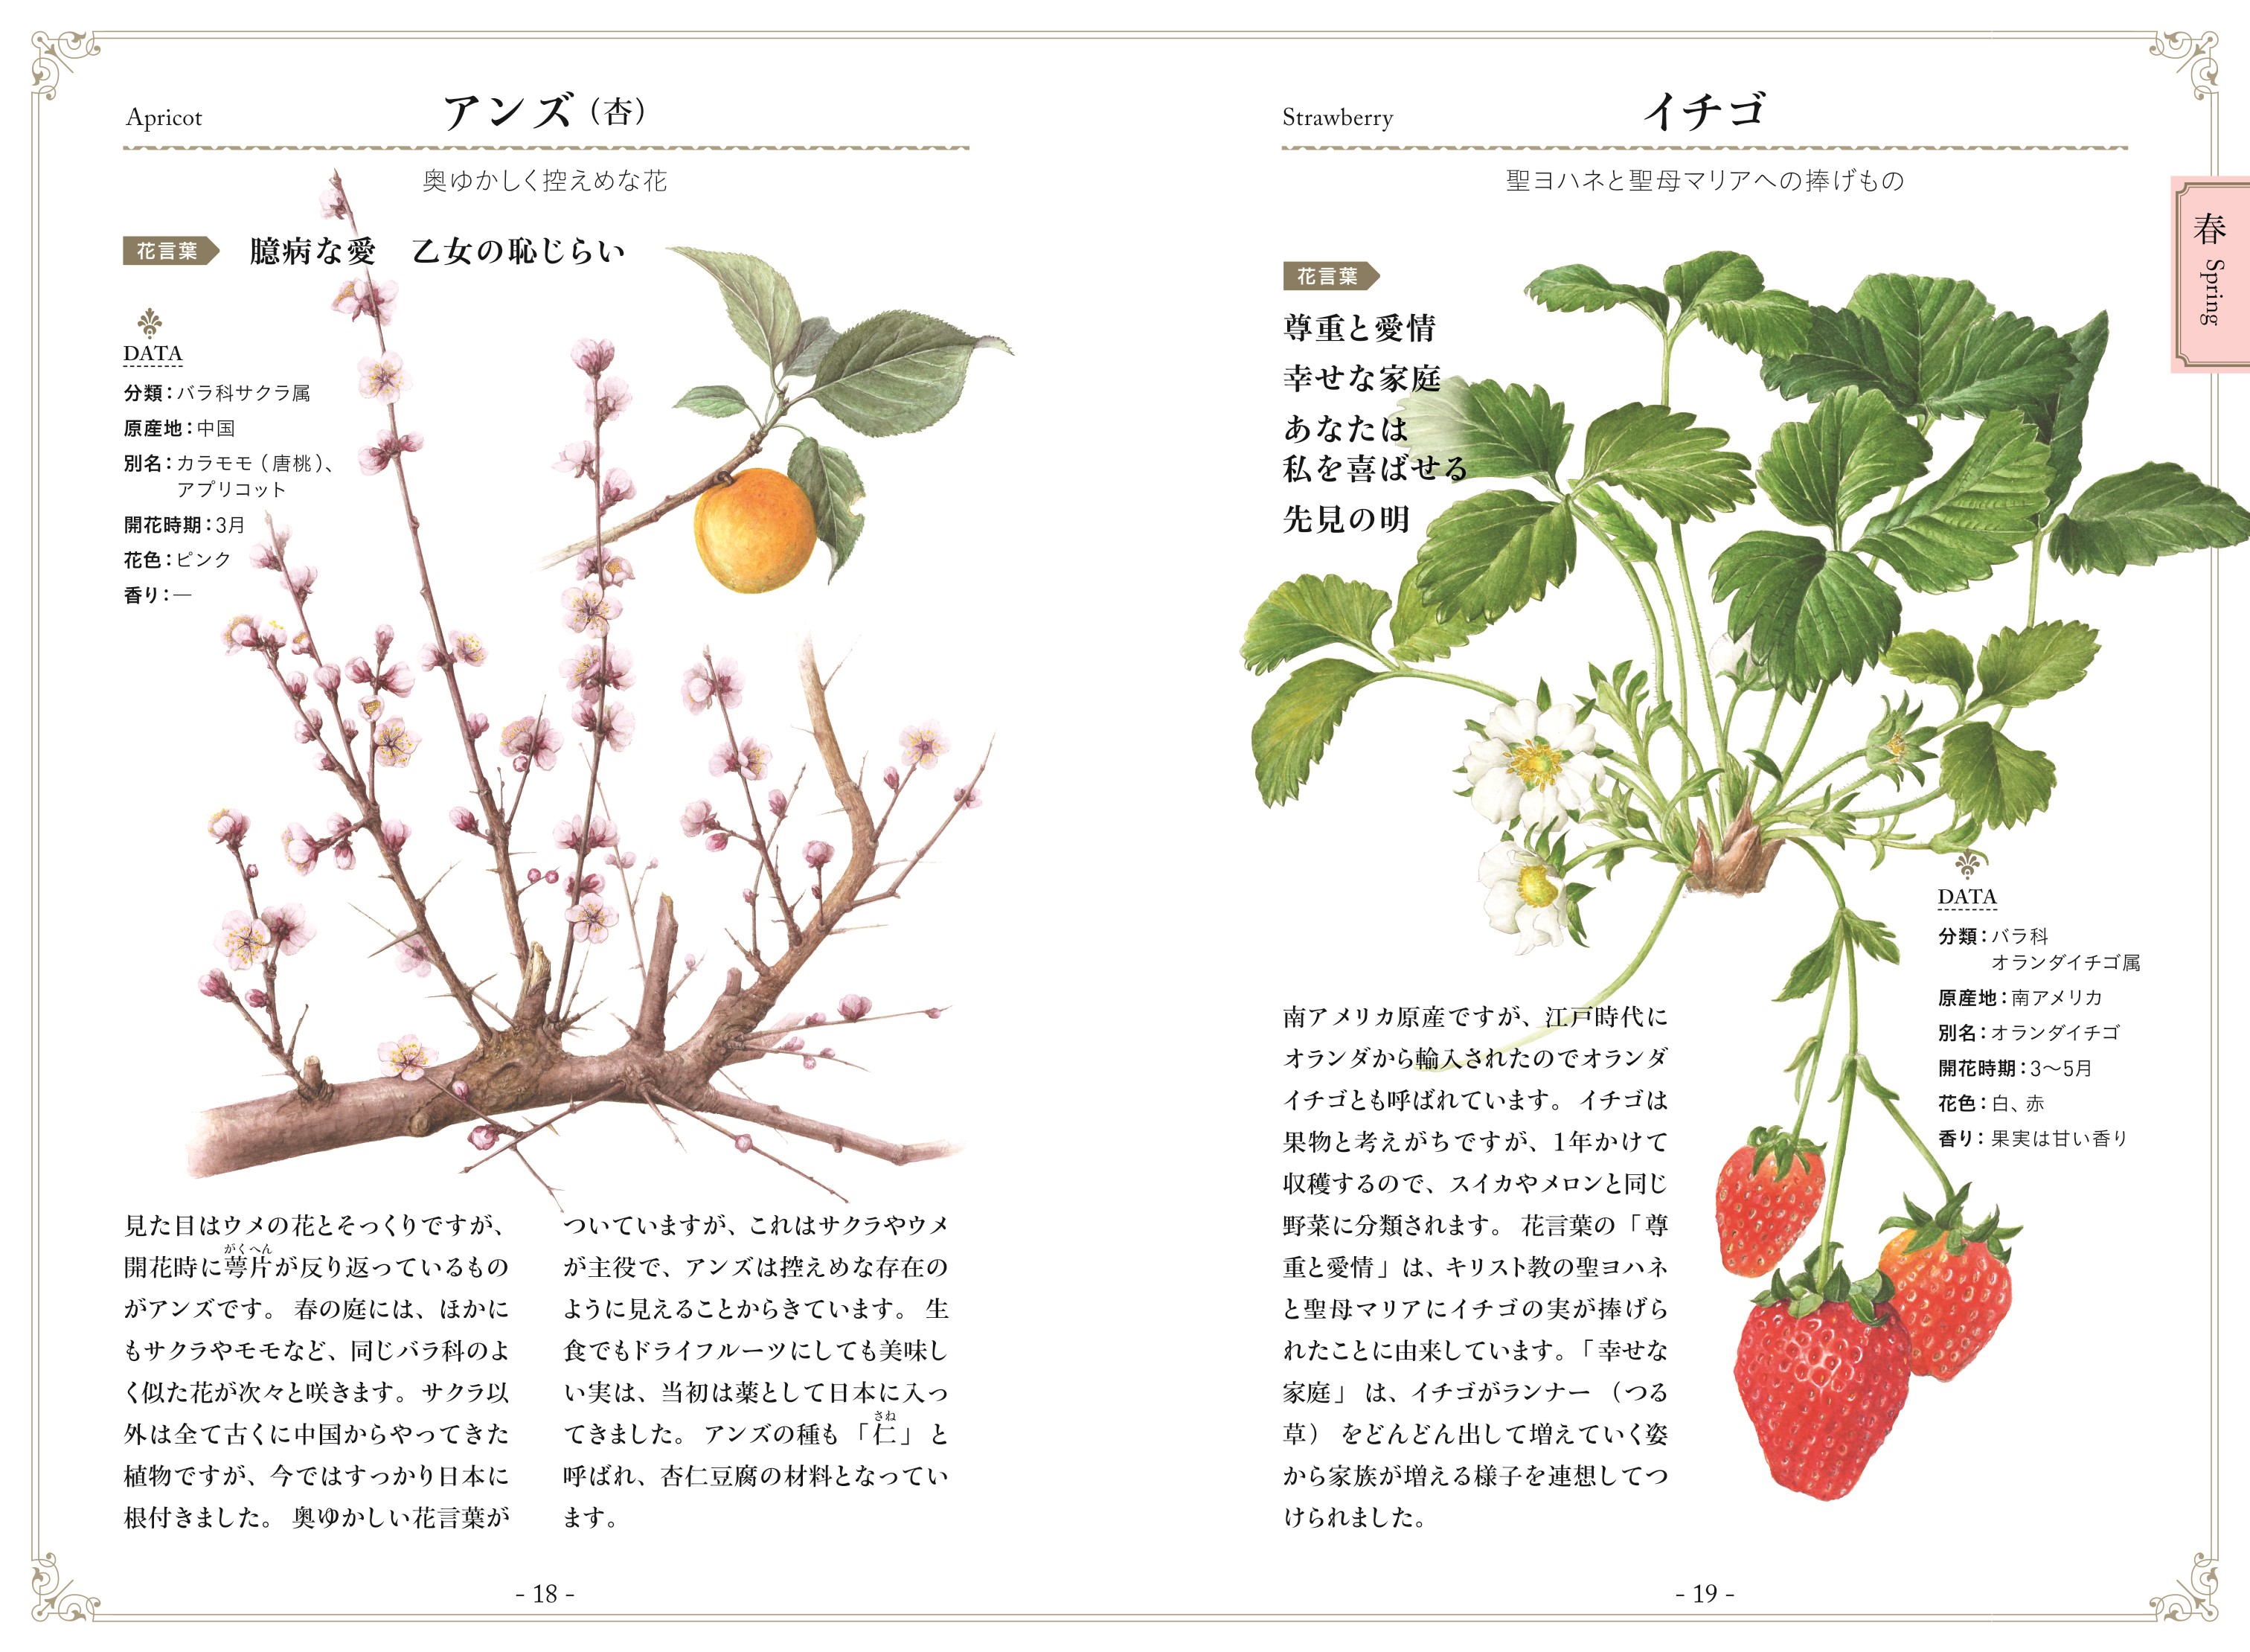 植物画で彩る 美しい花言葉 ナツメ社